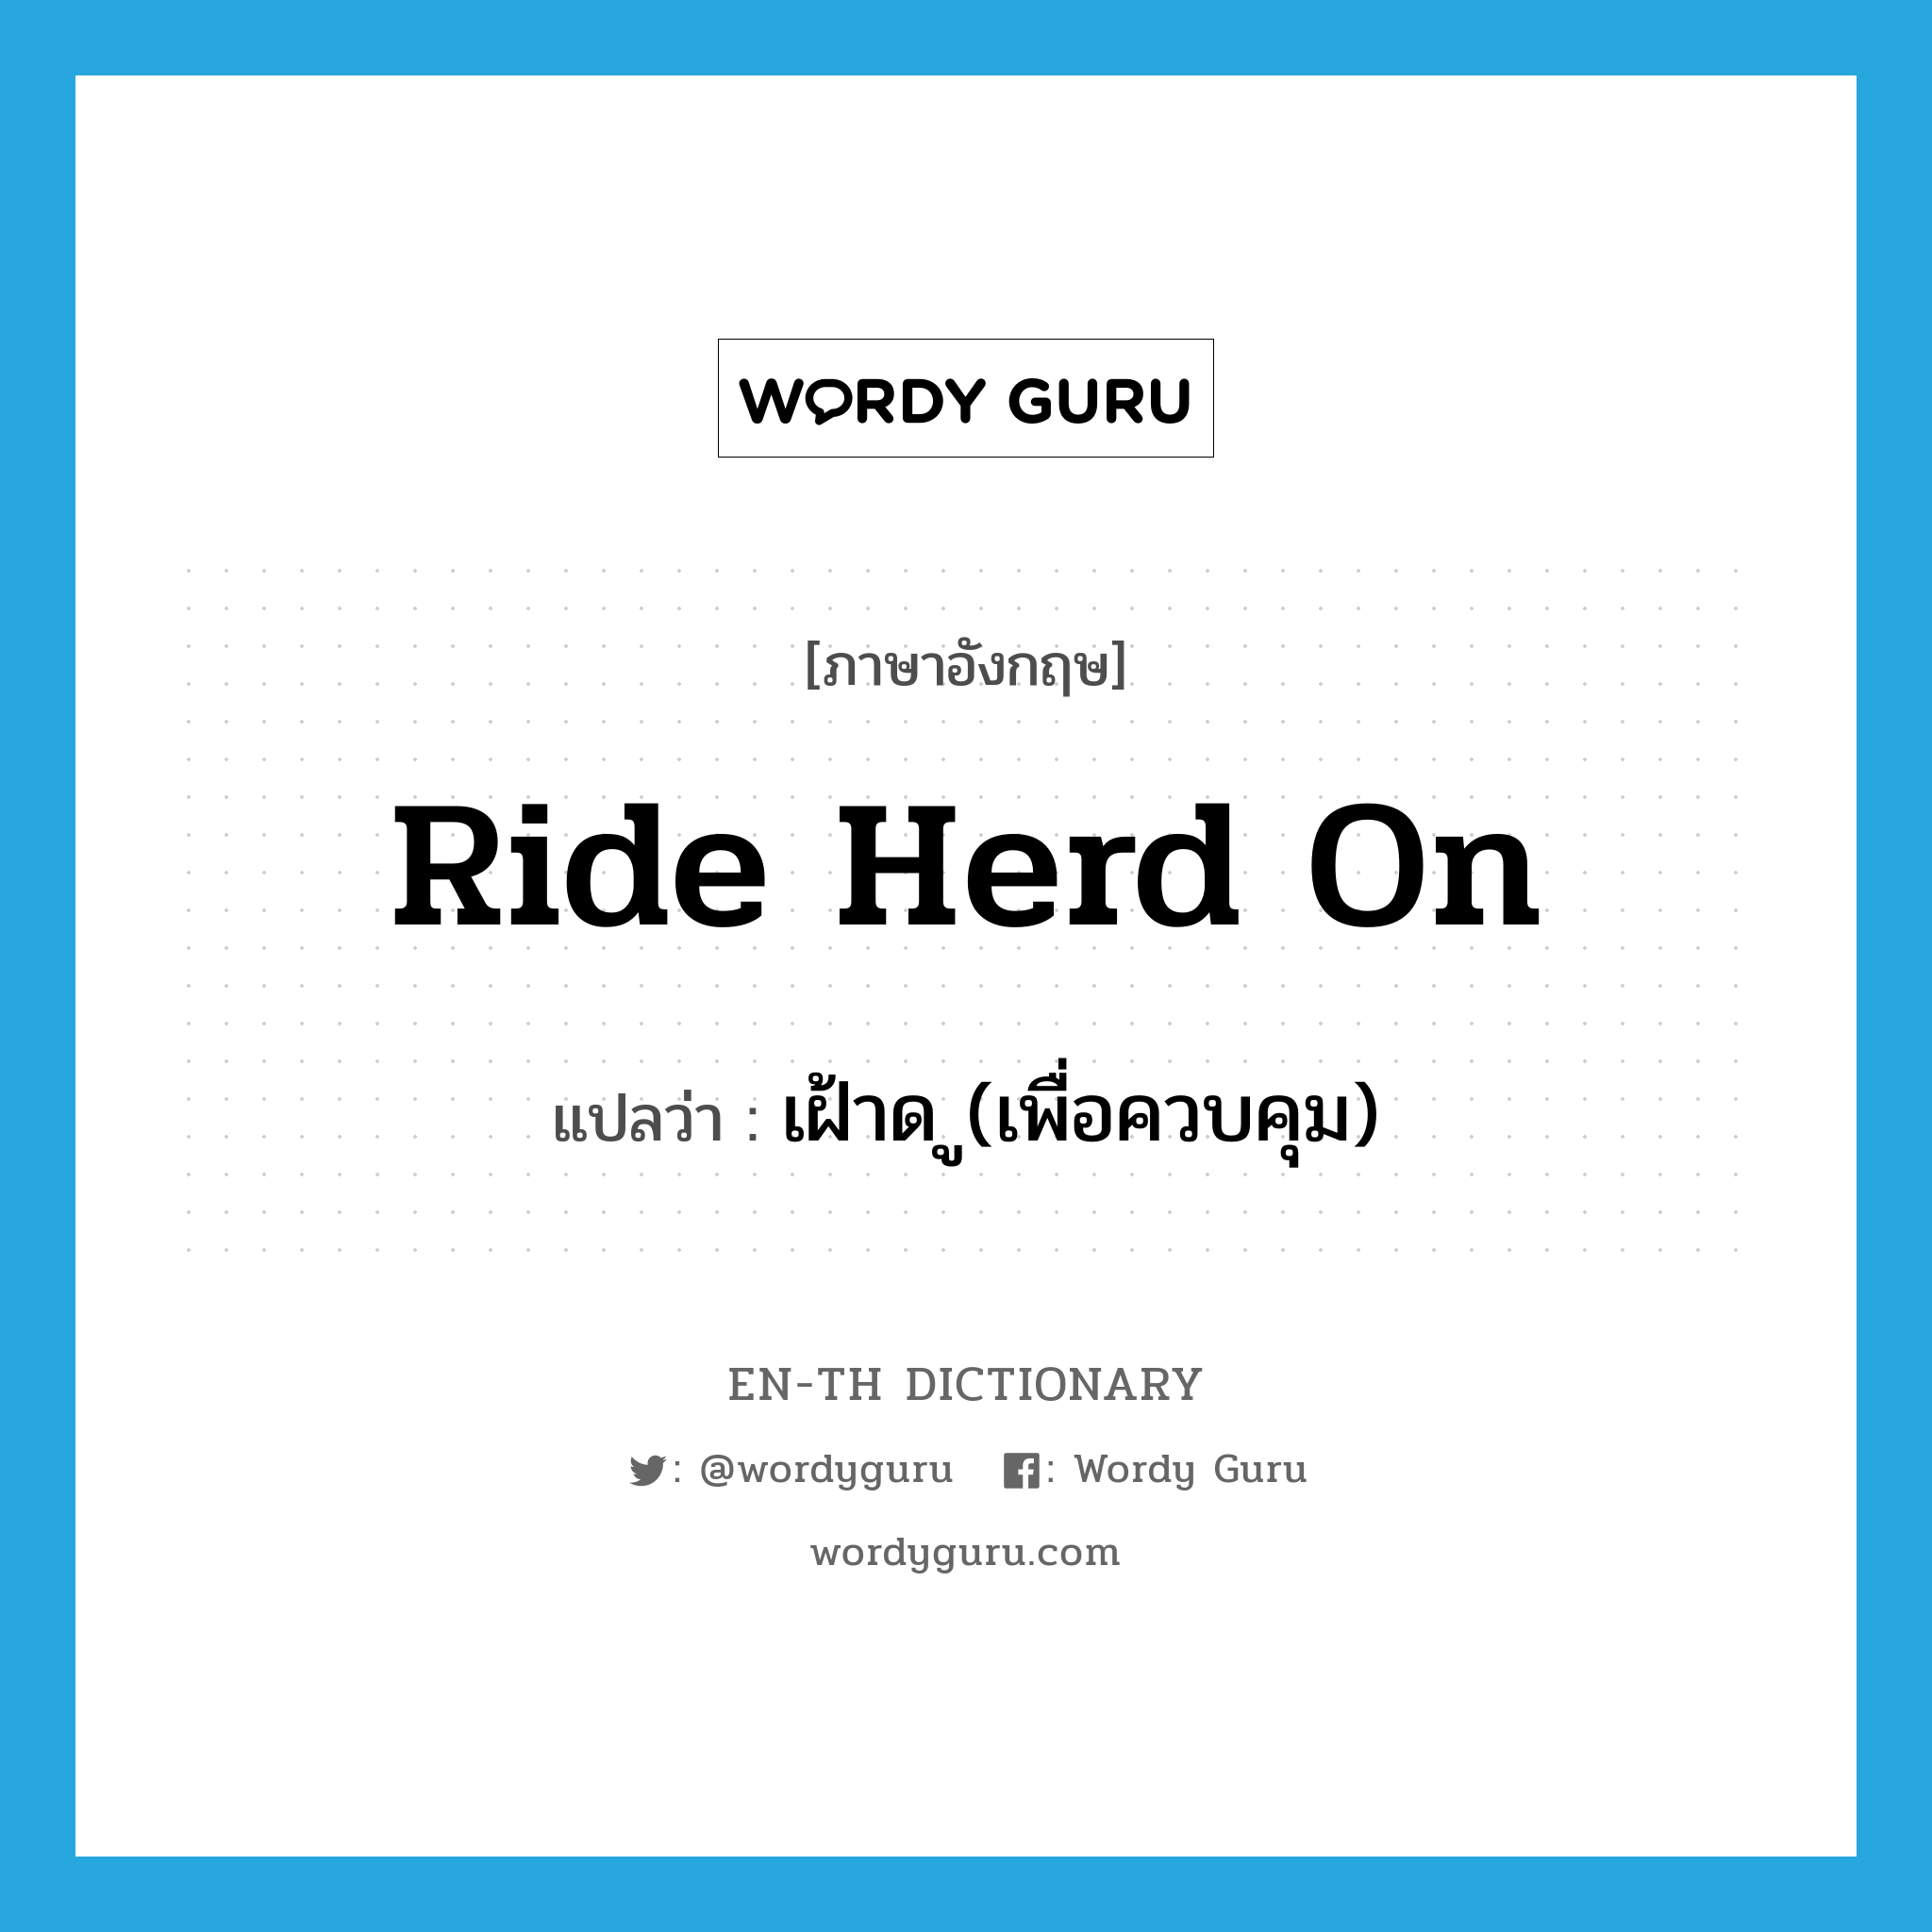 เฝ้าด ู(เพื่อควบคุม) ภาษาอังกฤษ?, คำศัพท์ภาษาอังกฤษ เฝ้าด ู(เพื่อควบคุม) แปลว่า ride herd on ประเภท PHRV หมวด PHRV